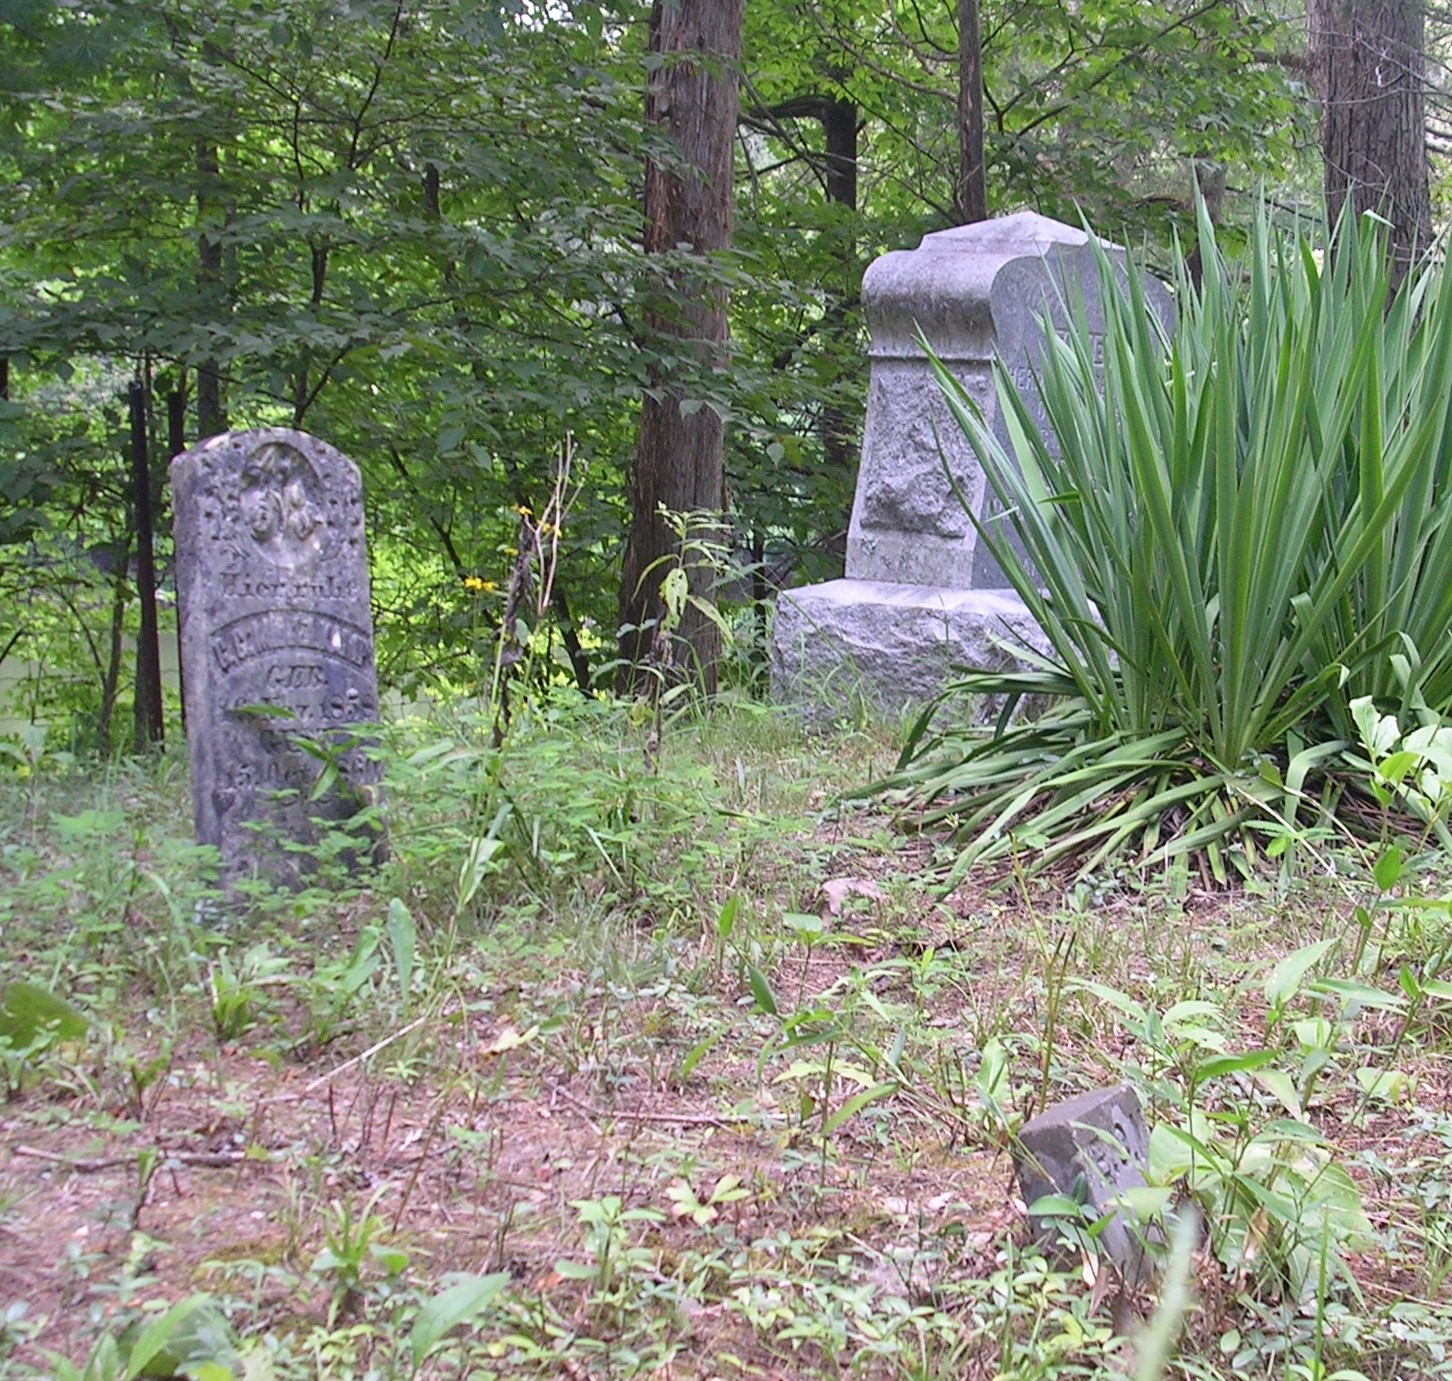 Hierrulus Cemetery